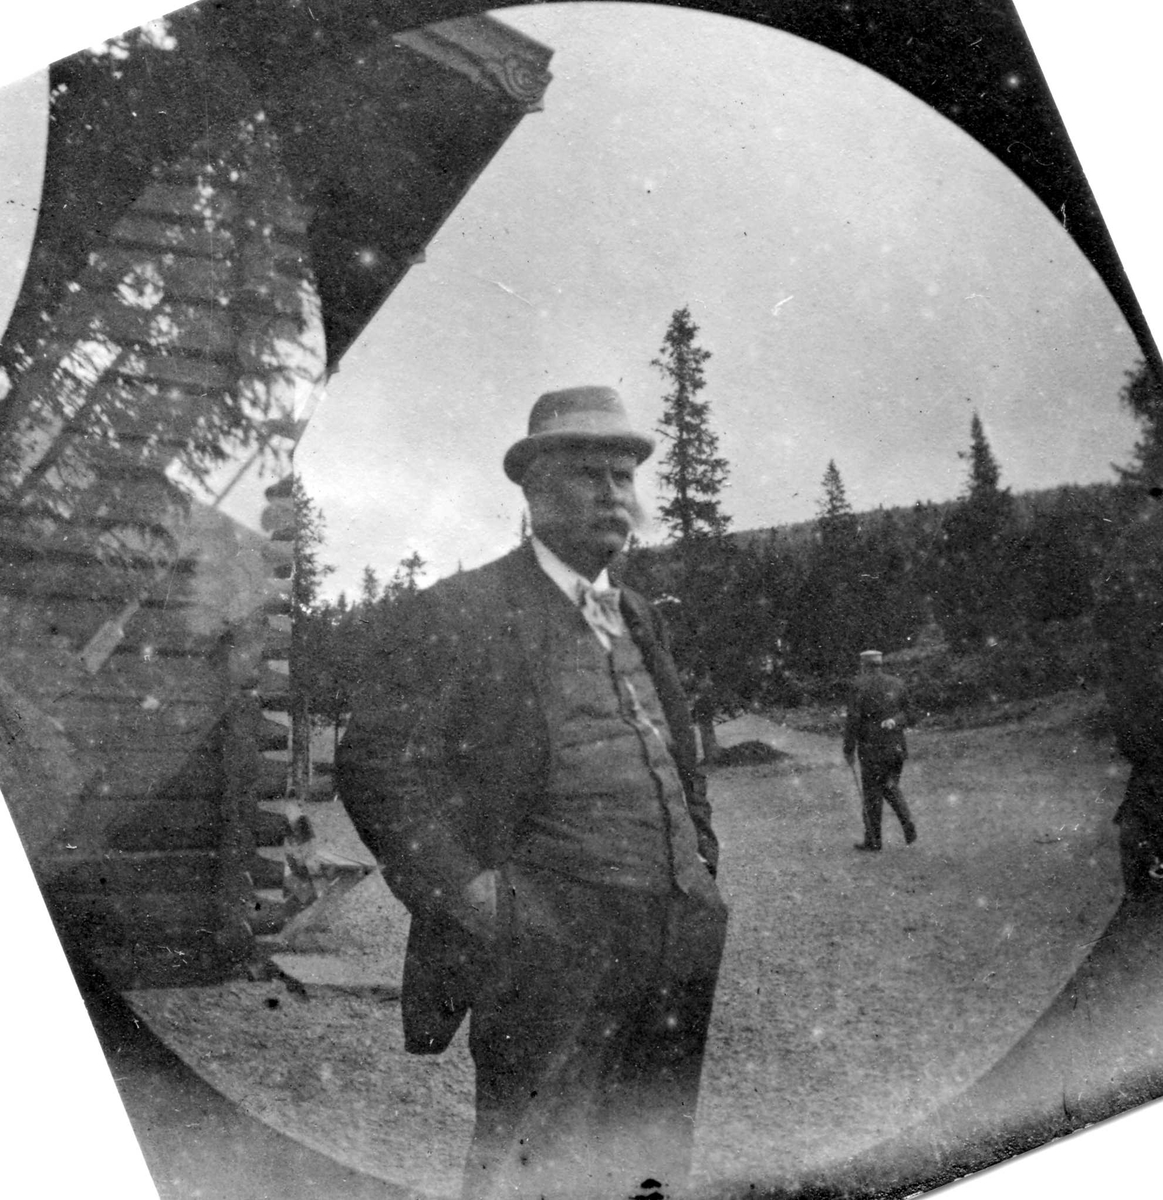 Golå, Sør-Fron, Oppland. Fotografens svigerfar, generalkonsul C. Clauson, med hendene i lomma ved tømmerhus i skogen.